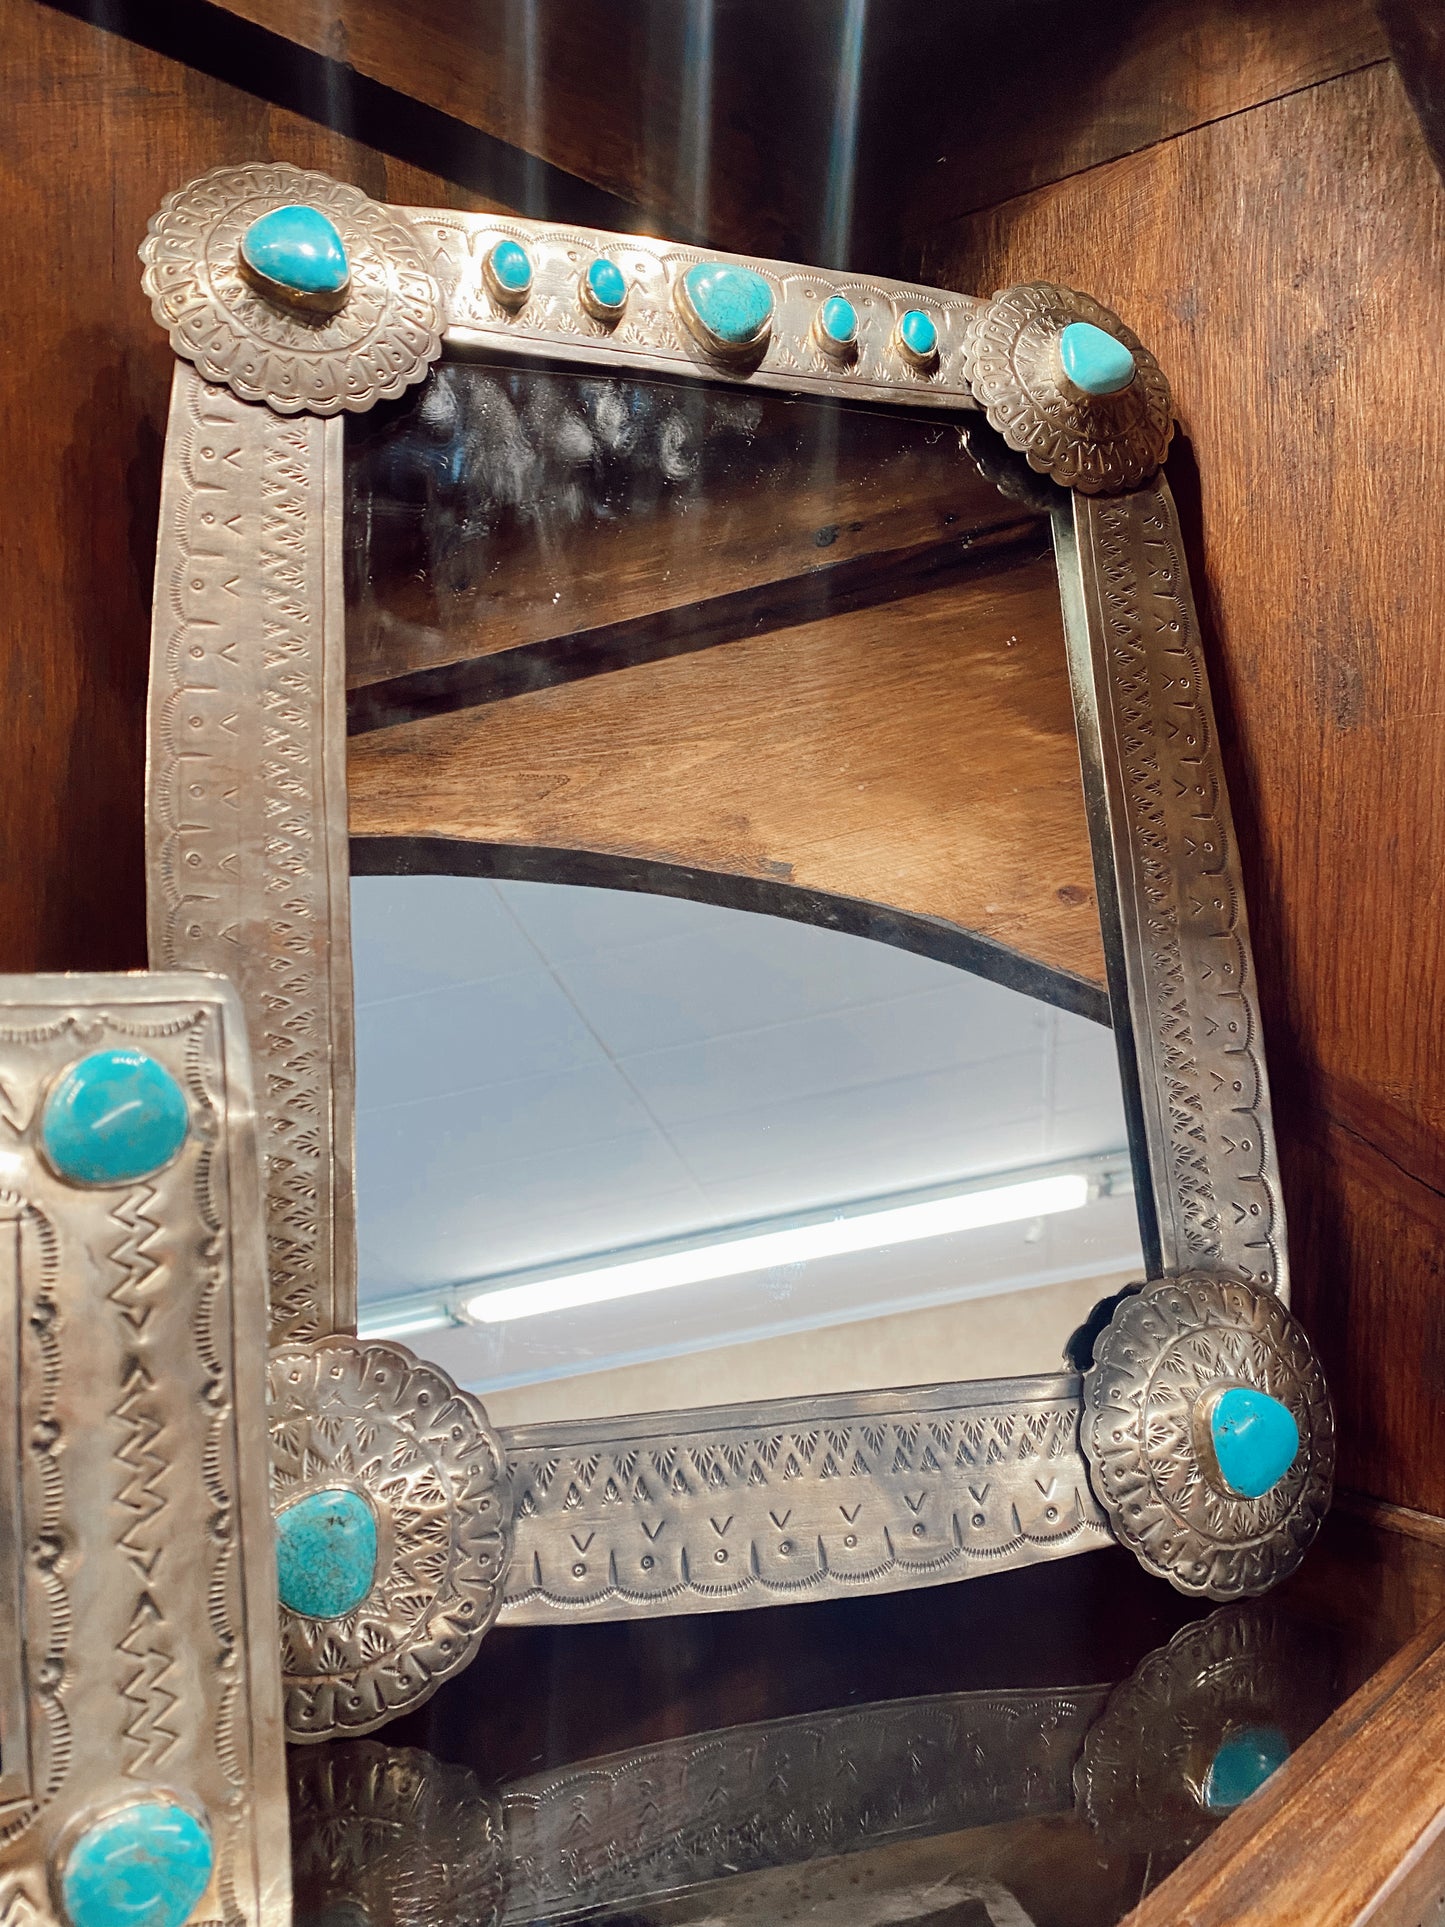 The Myles Turquoise Mirror